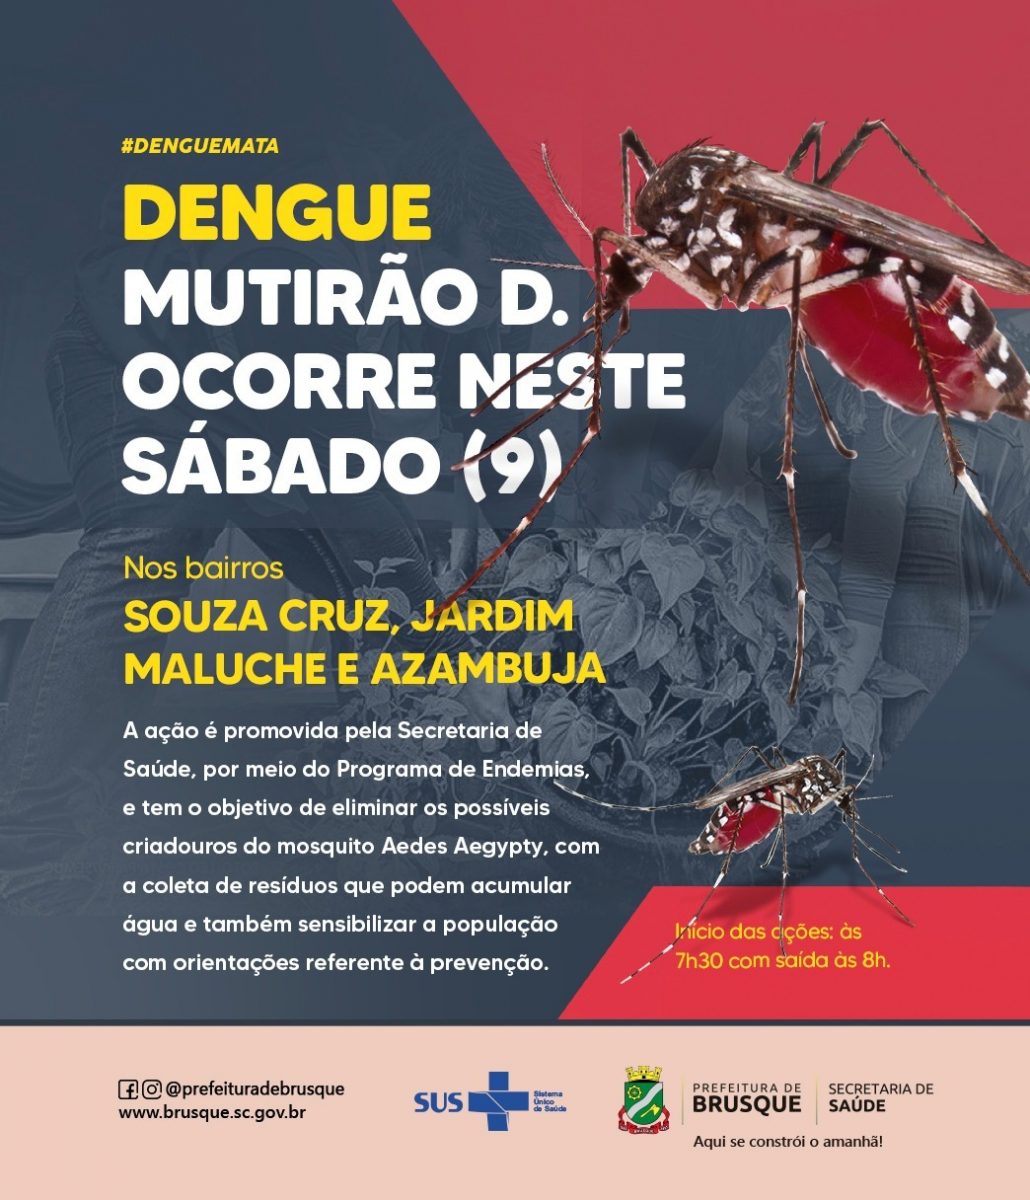 Dengue: Mutirão D. ocorre neste sábado nos bairros Souza Cruz, Jardim Maluche e Azambuja